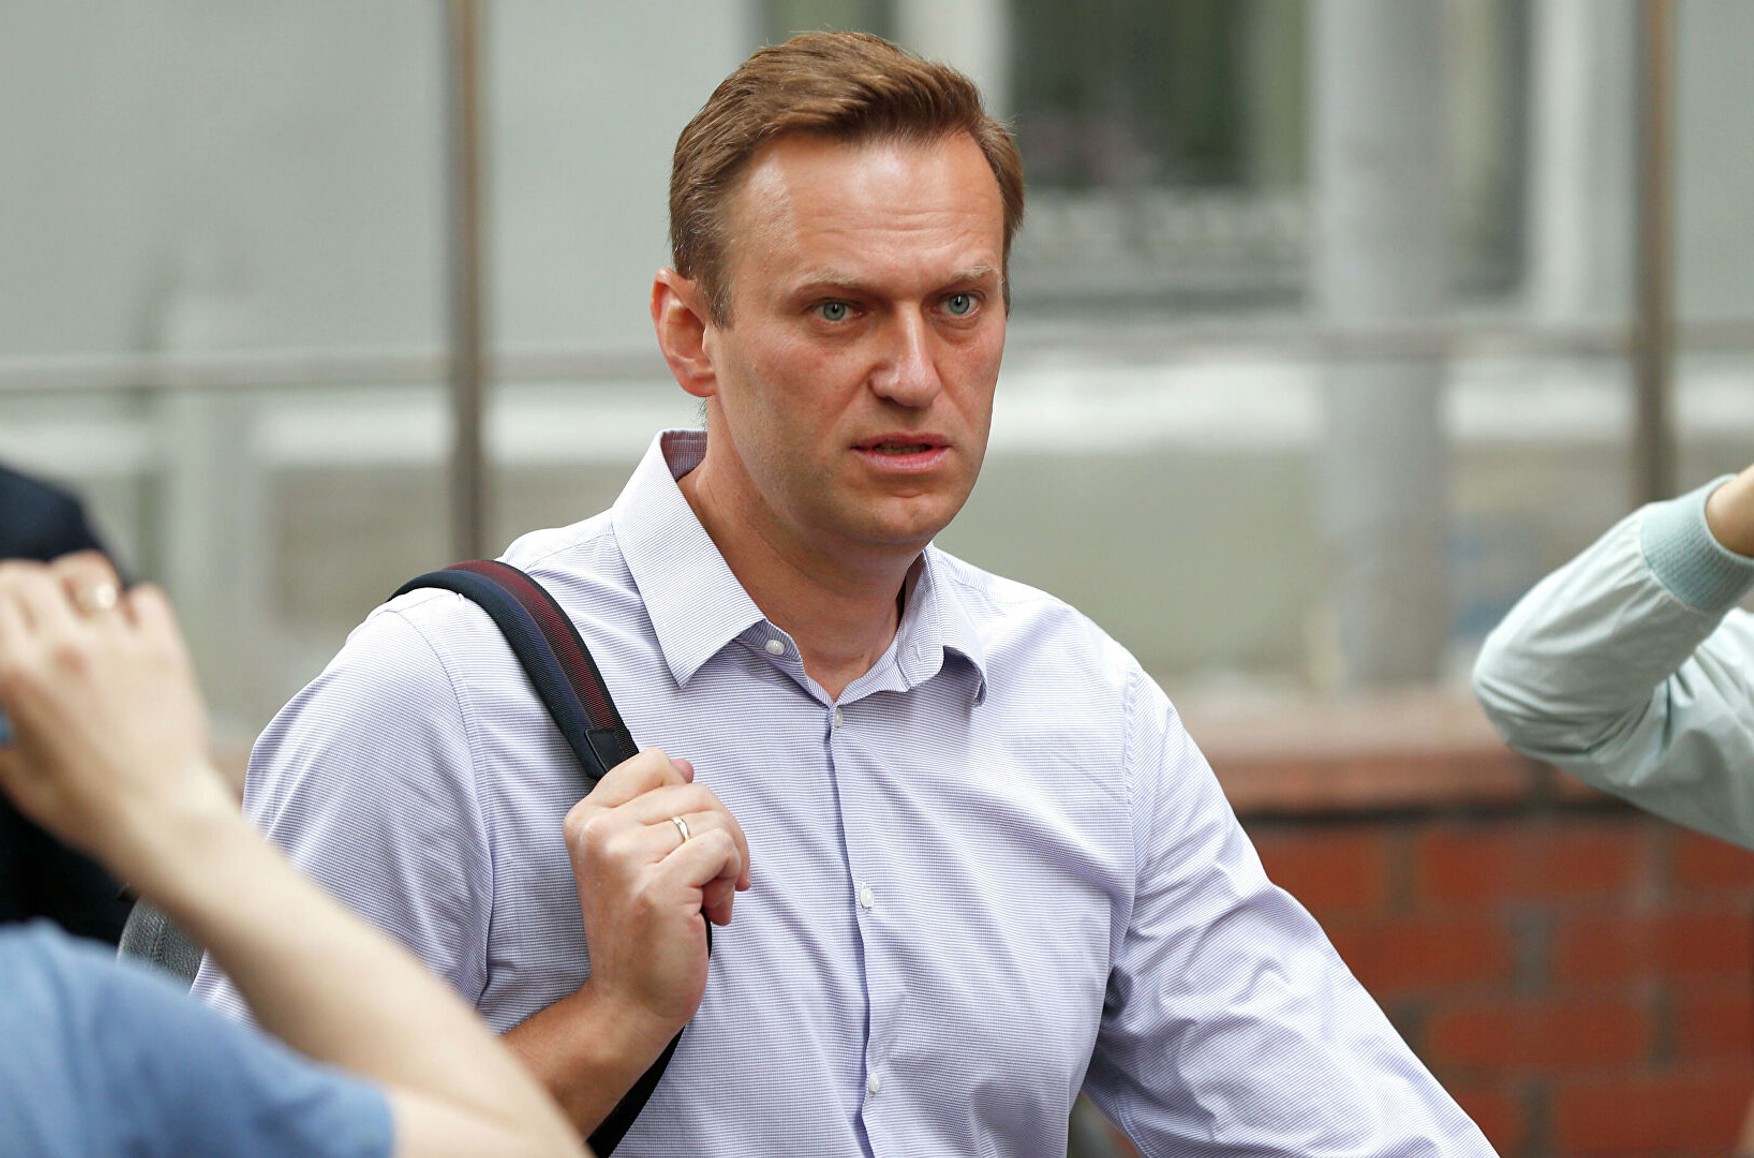 ФСВП пригрозила Навальному замінити умовний термін на реальний по справі «Ів Роше»